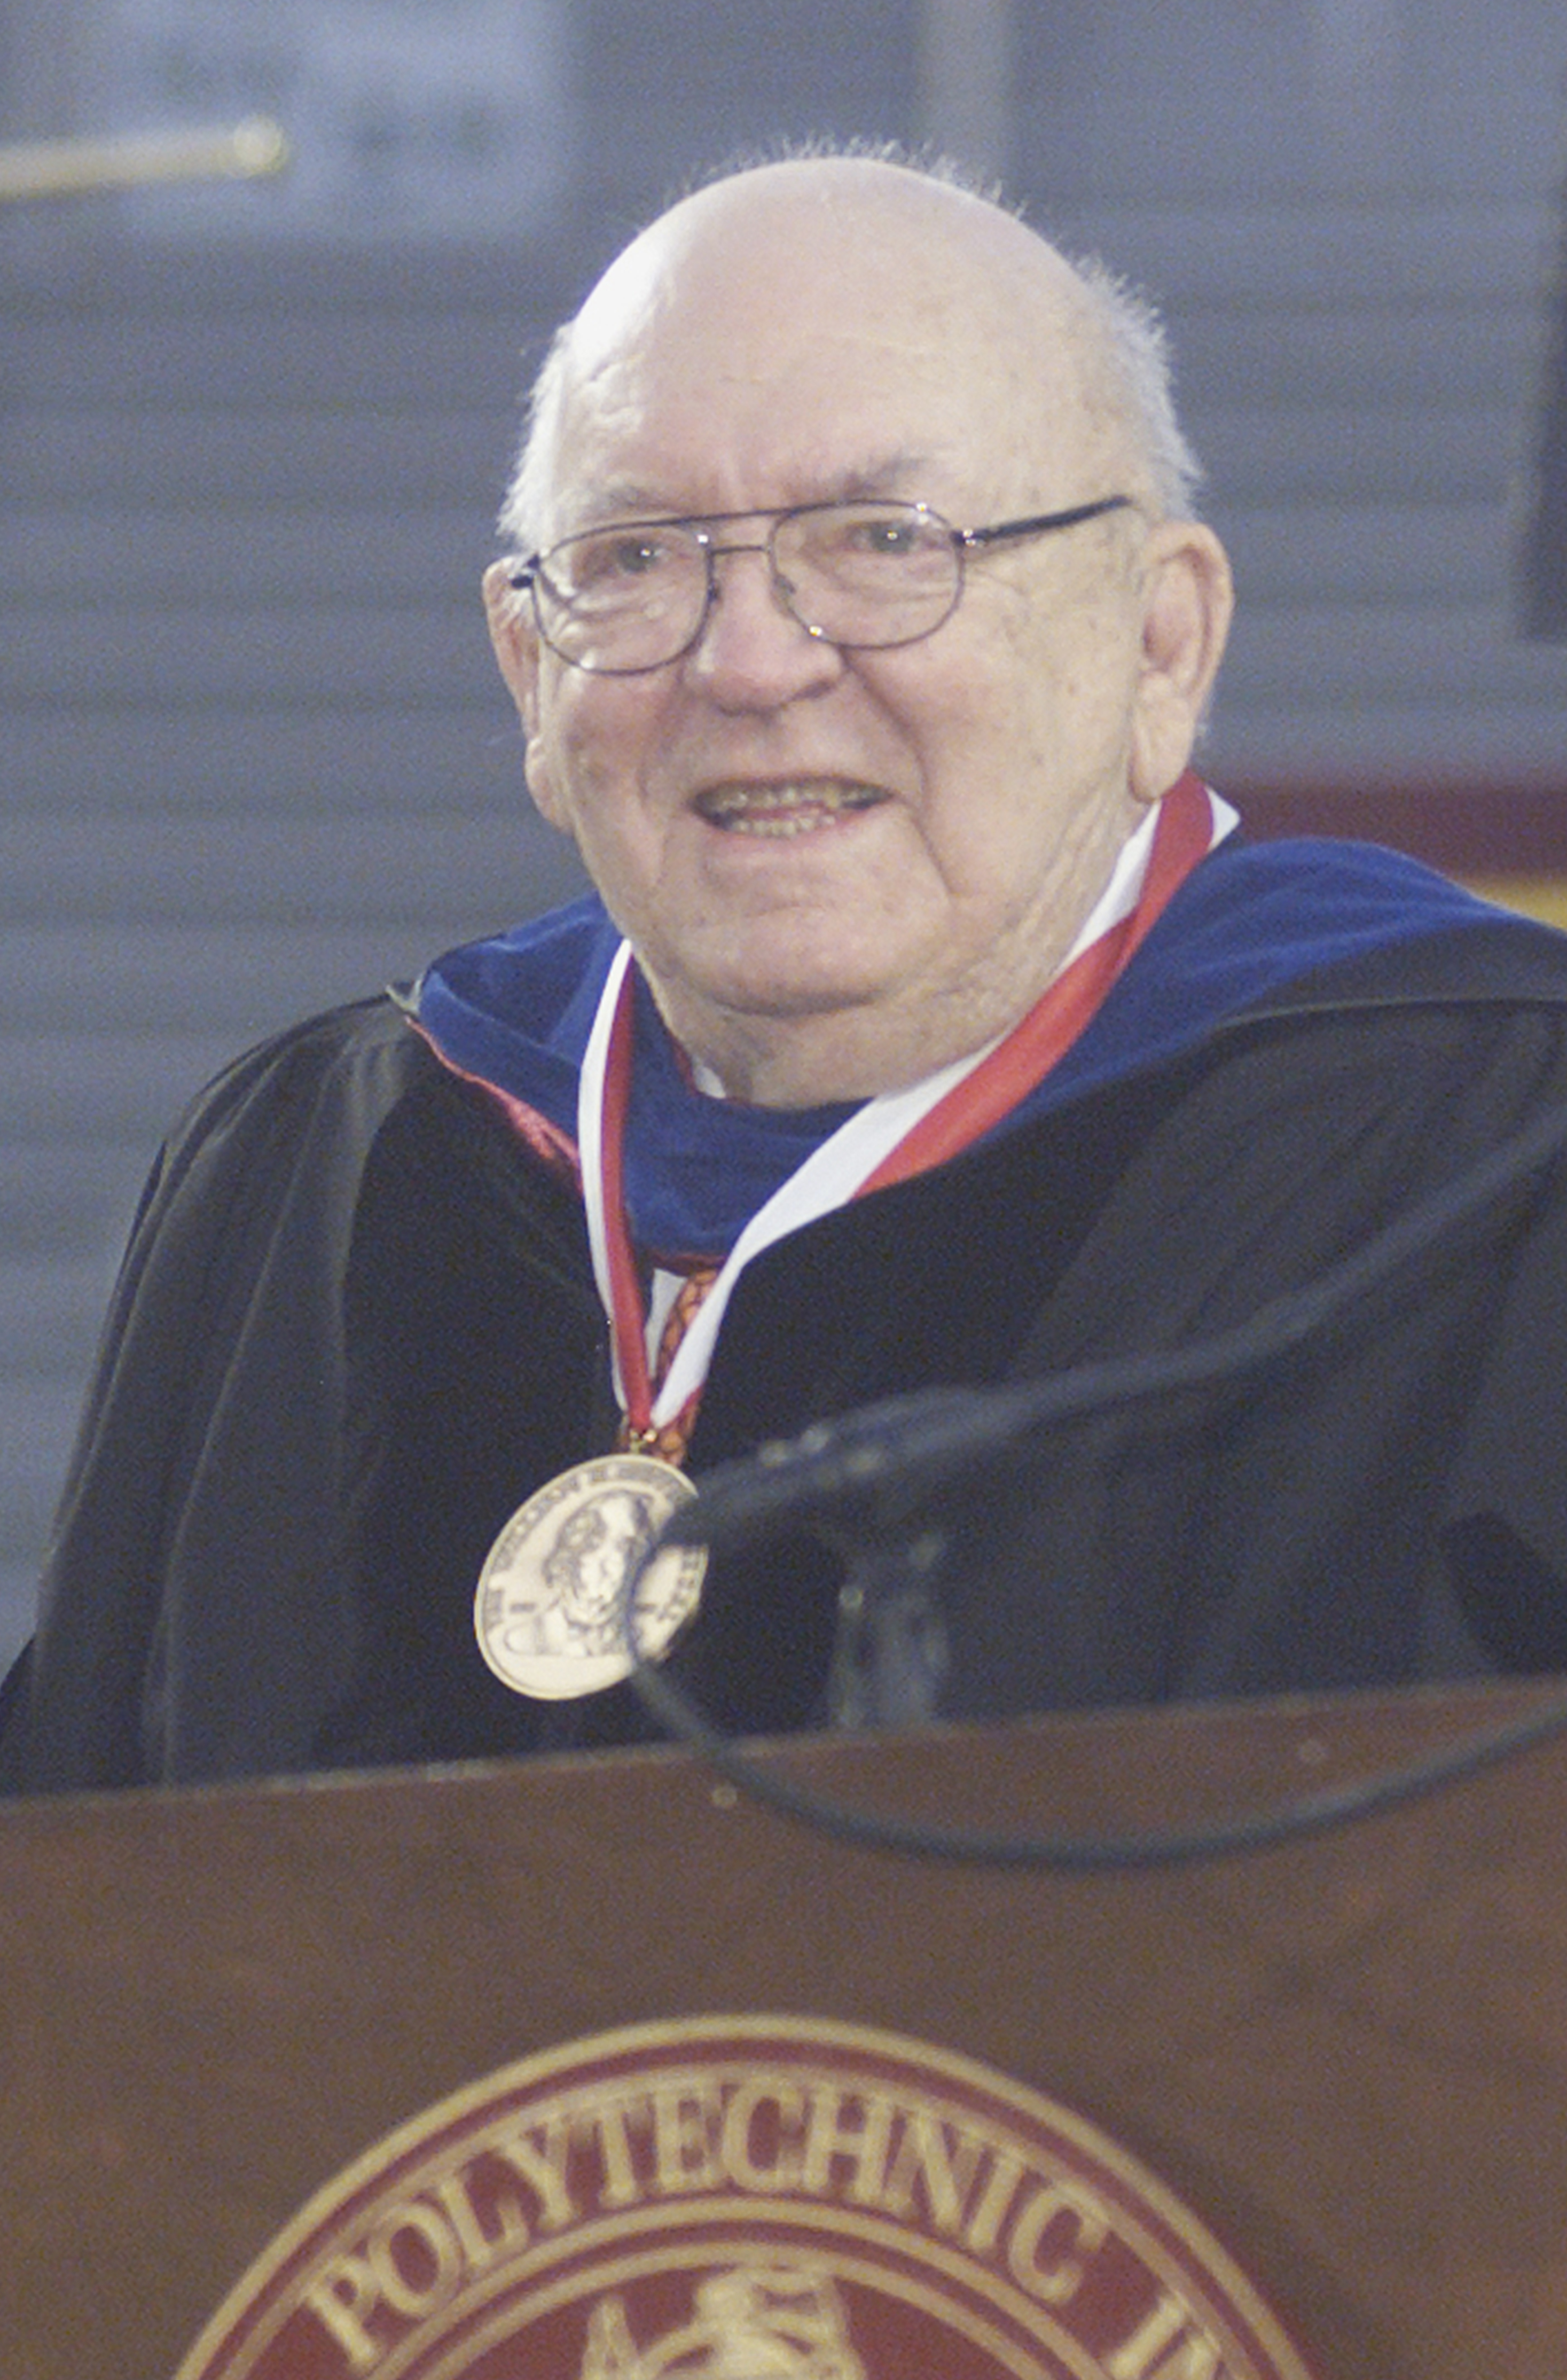 Floyd W. "Sonny" Merryman Jr. receiving the William H. Ruffner Medal.